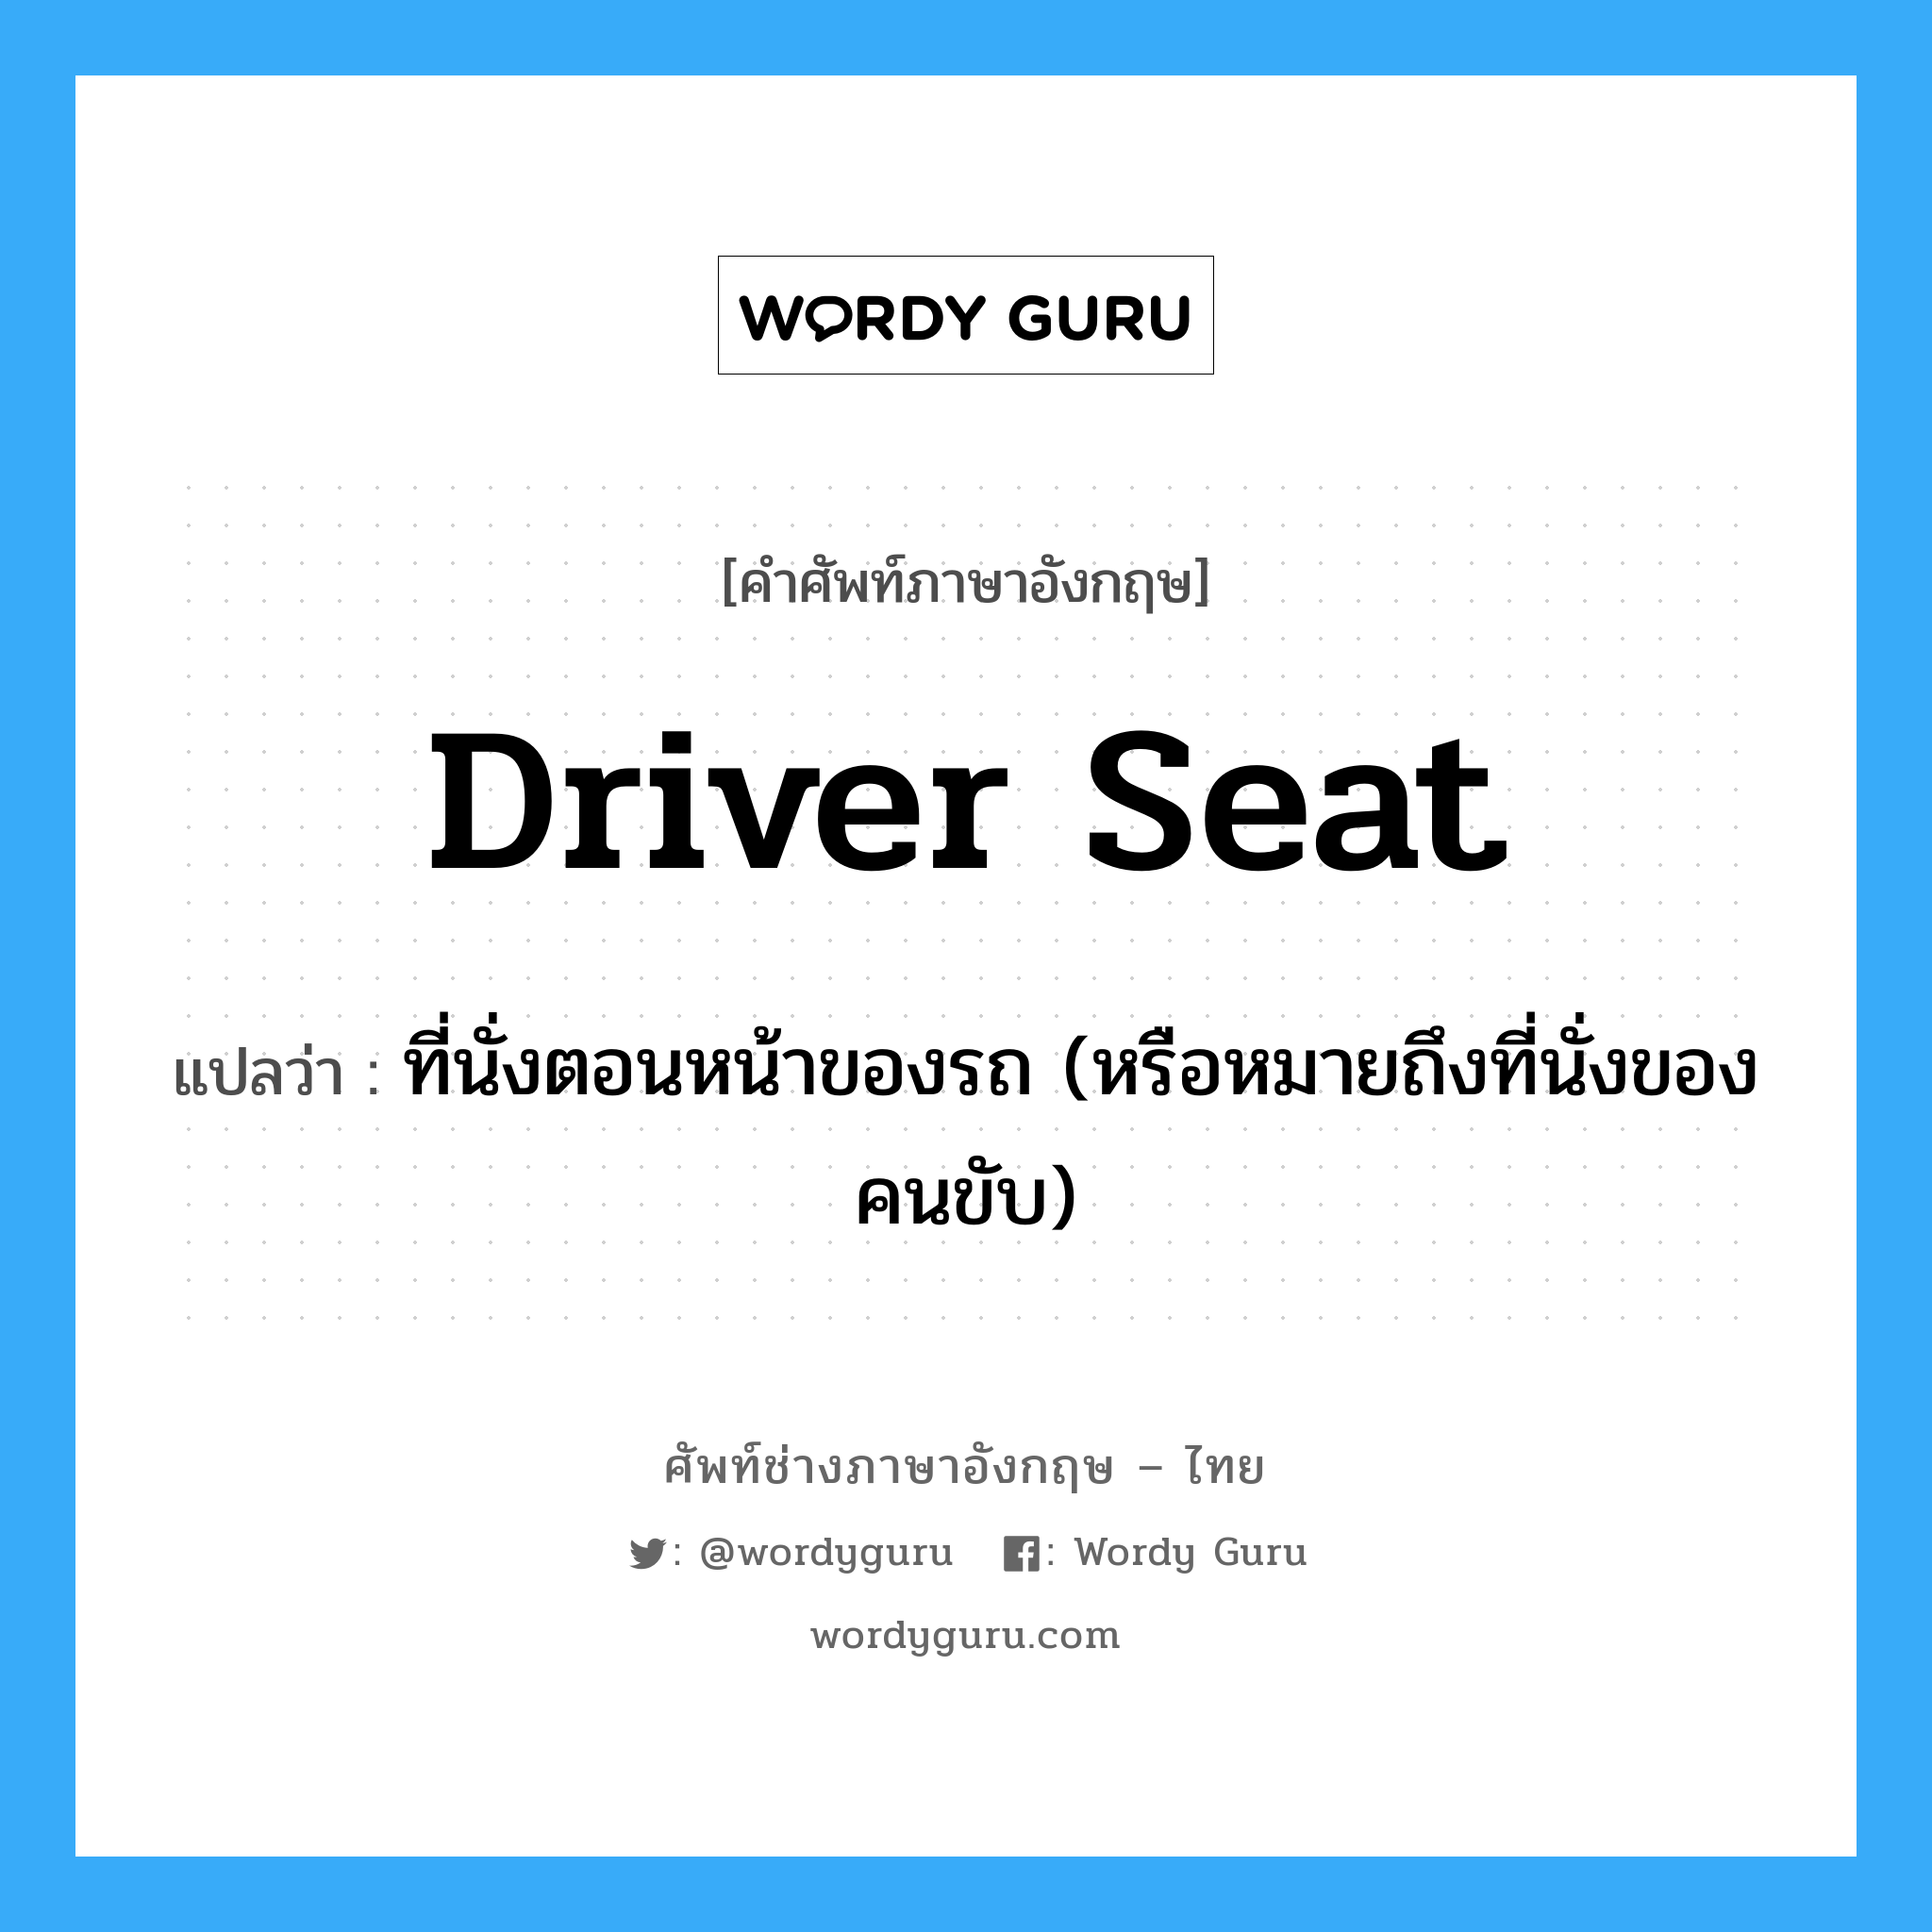 ที่นั่งตอนหน้าของรถ (หรือหมายถึงที่นั่งของคนขับ) ภาษาอังกฤษ?, คำศัพท์ช่างภาษาอังกฤษ - ไทย ที่นั่งตอนหน้าของรถ (หรือหมายถึงที่นั่งของคนขับ) คำศัพท์ภาษาอังกฤษ ที่นั่งตอนหน้าของรถ (หรือหมายถึงที่นั่งของคนขับ) แปลว่า driver seat